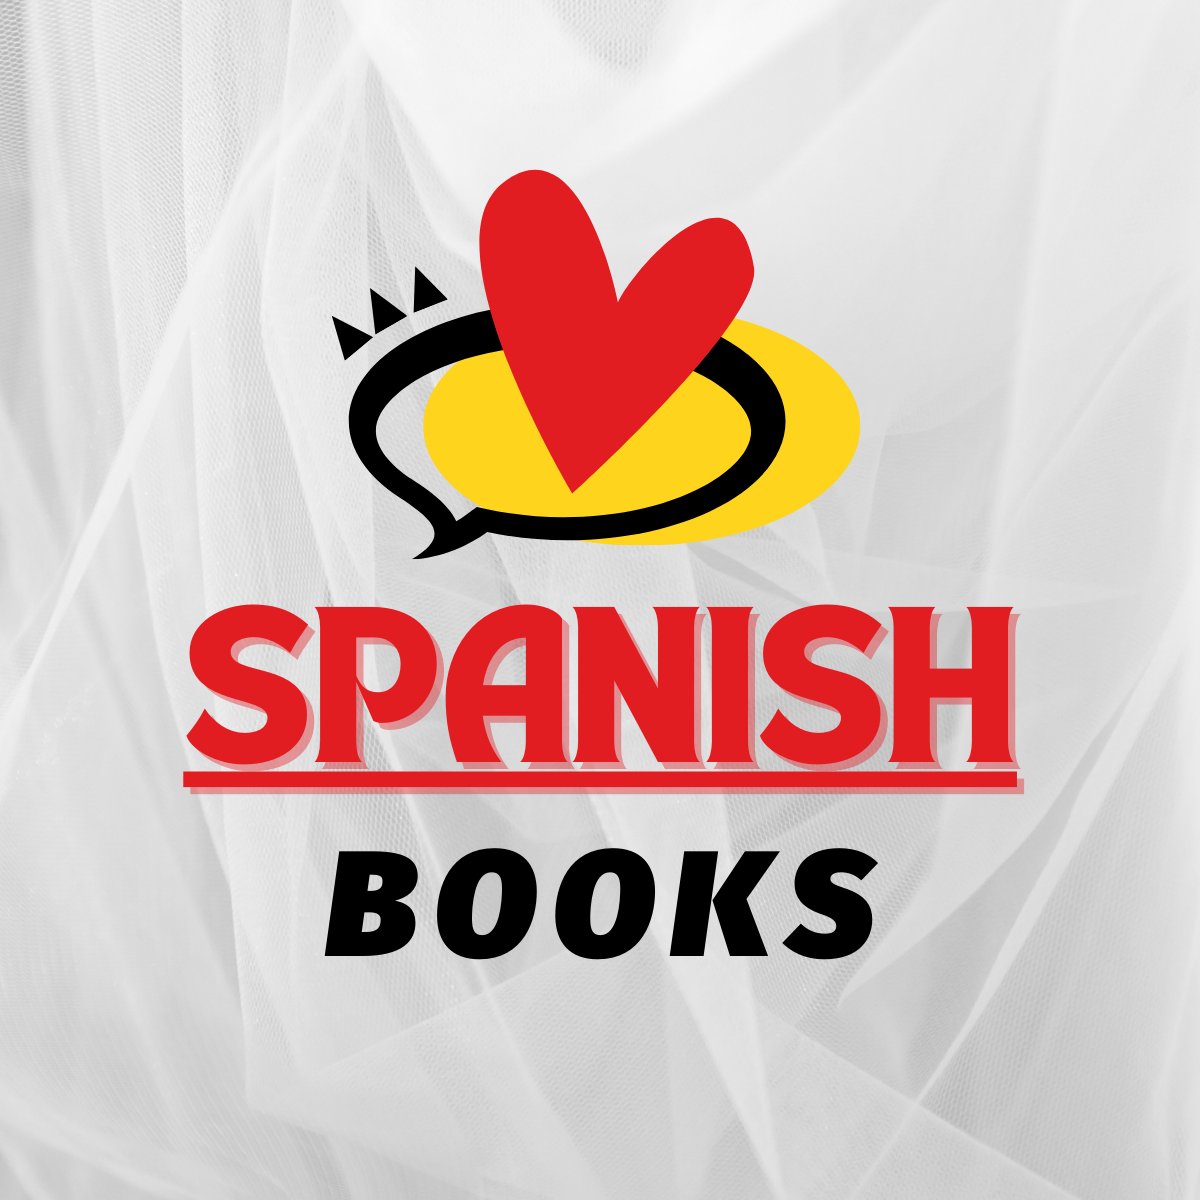 Spanish-Espanol